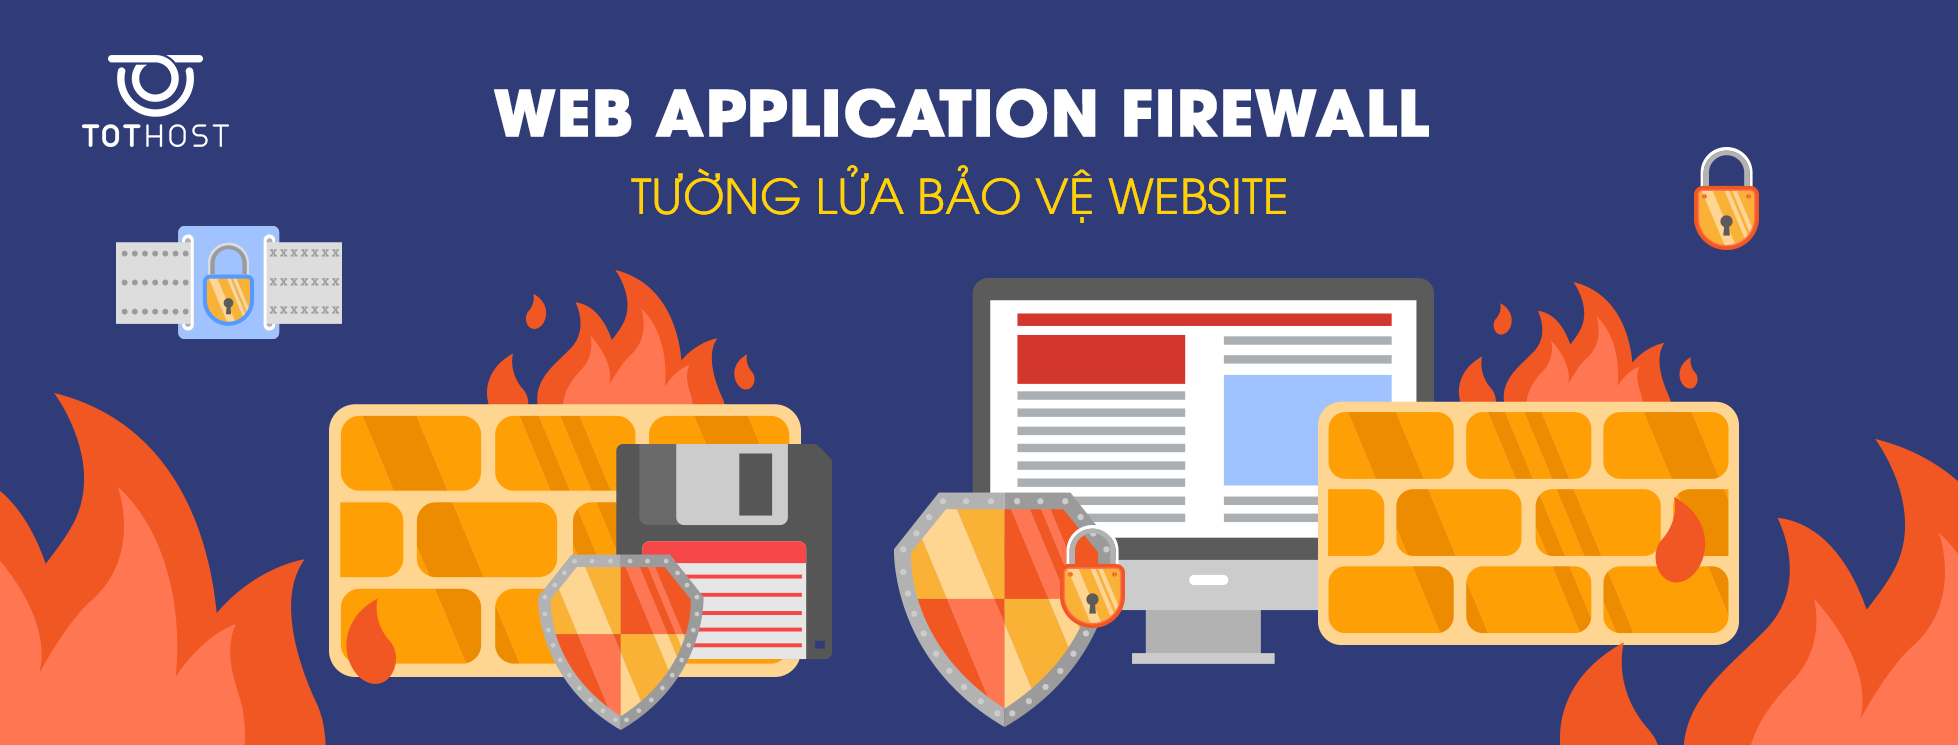 Web Application Firewall là gì?